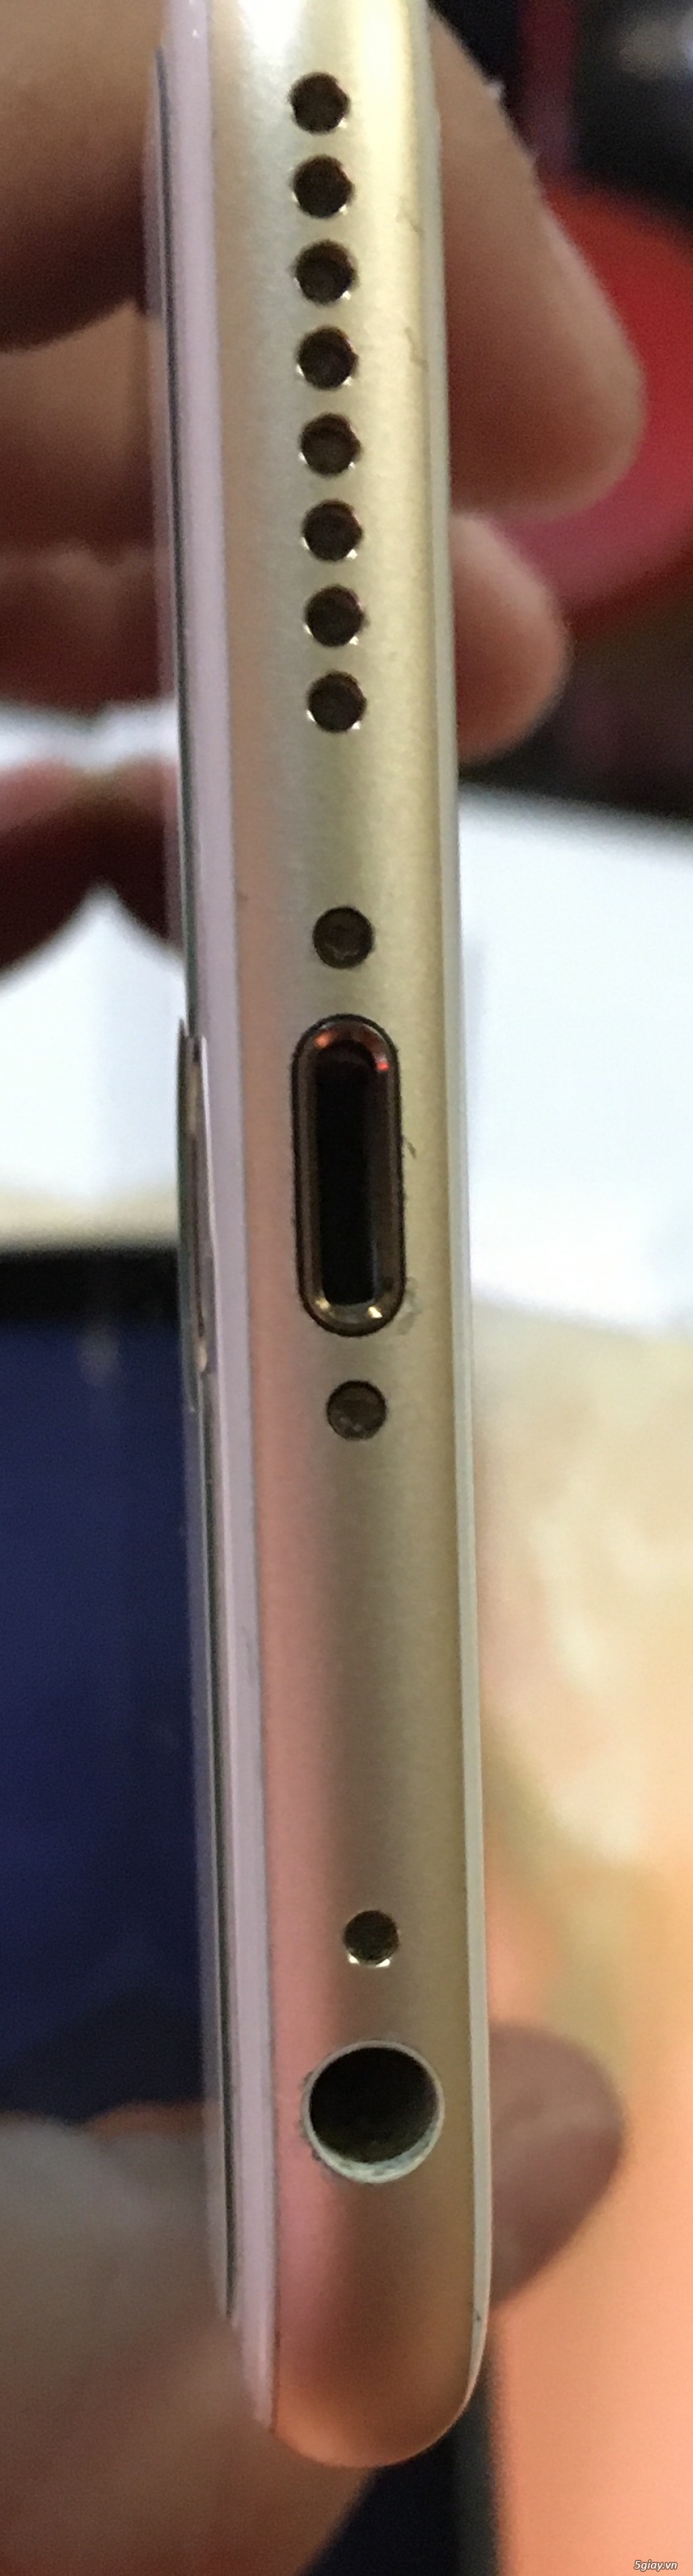 Bán iPhone 6s Plus 64GB (Gold) nữ xài mới 99% - 3